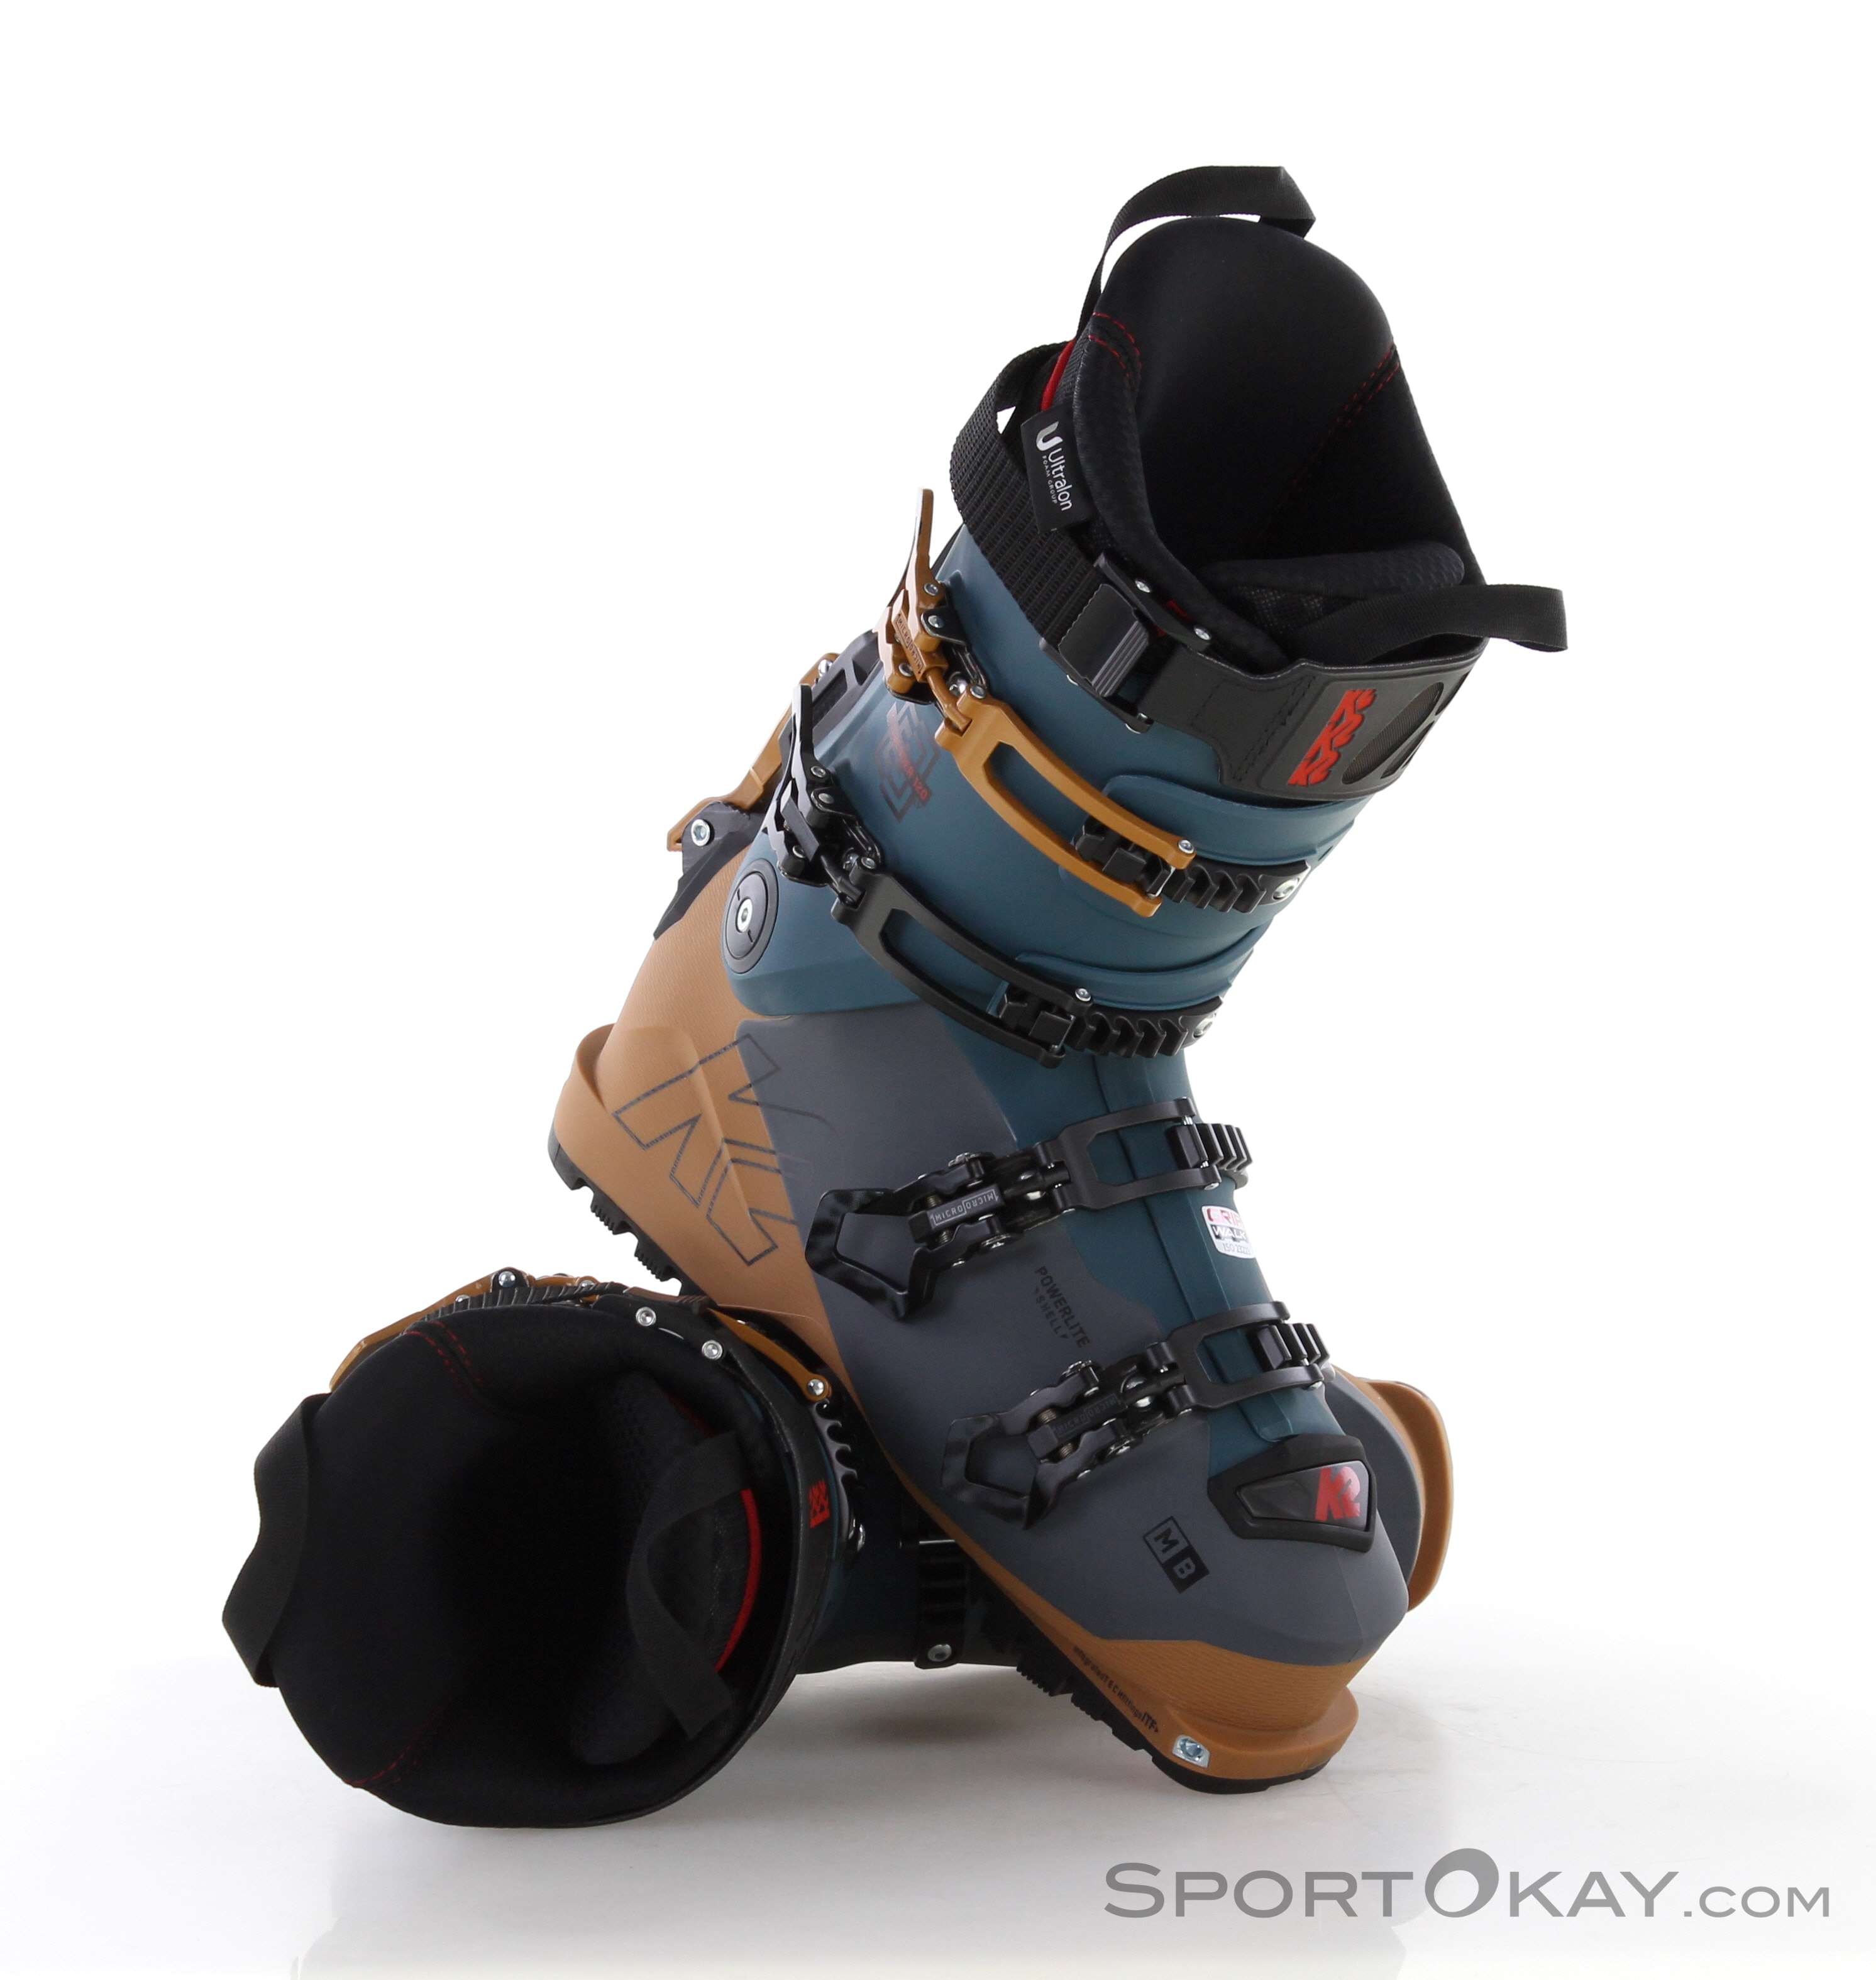 K2 Mindbender 120 LV Ski Boot (Men's)